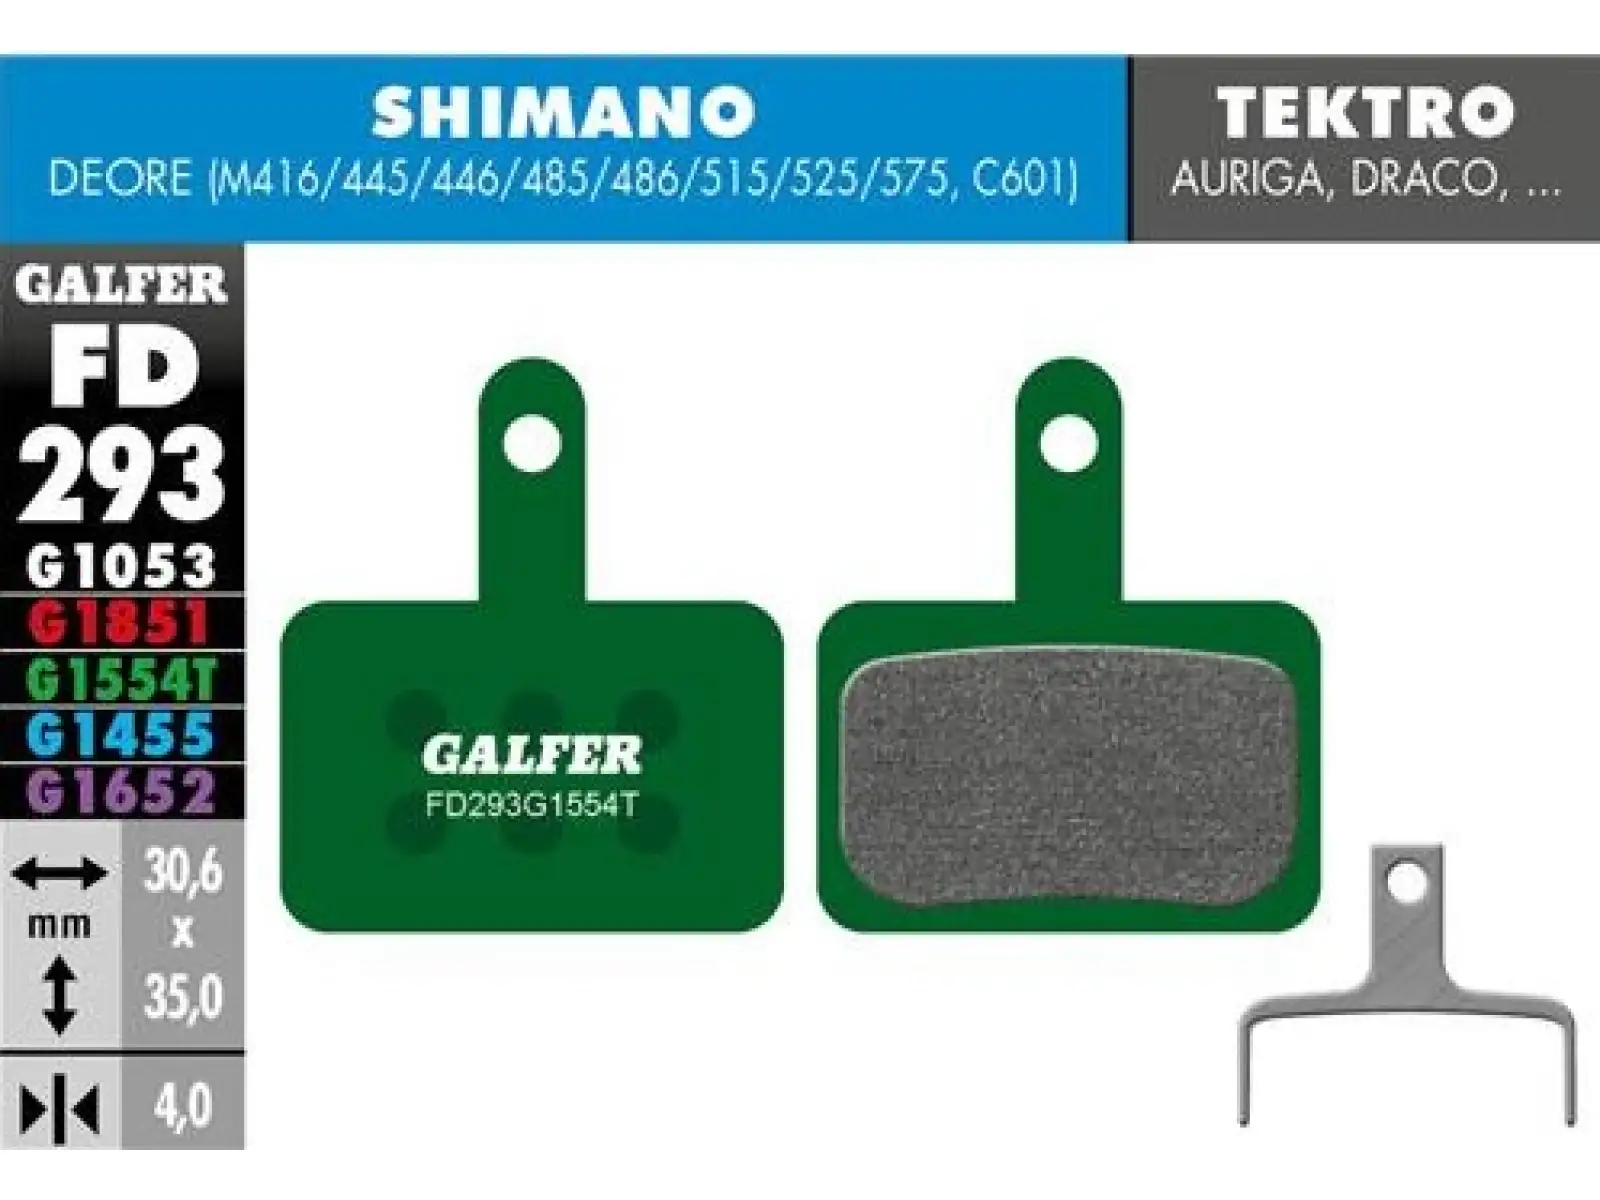 Galfer FD293 Pro G1554T brzdové destičky pro Shimano/Tektro/TRP